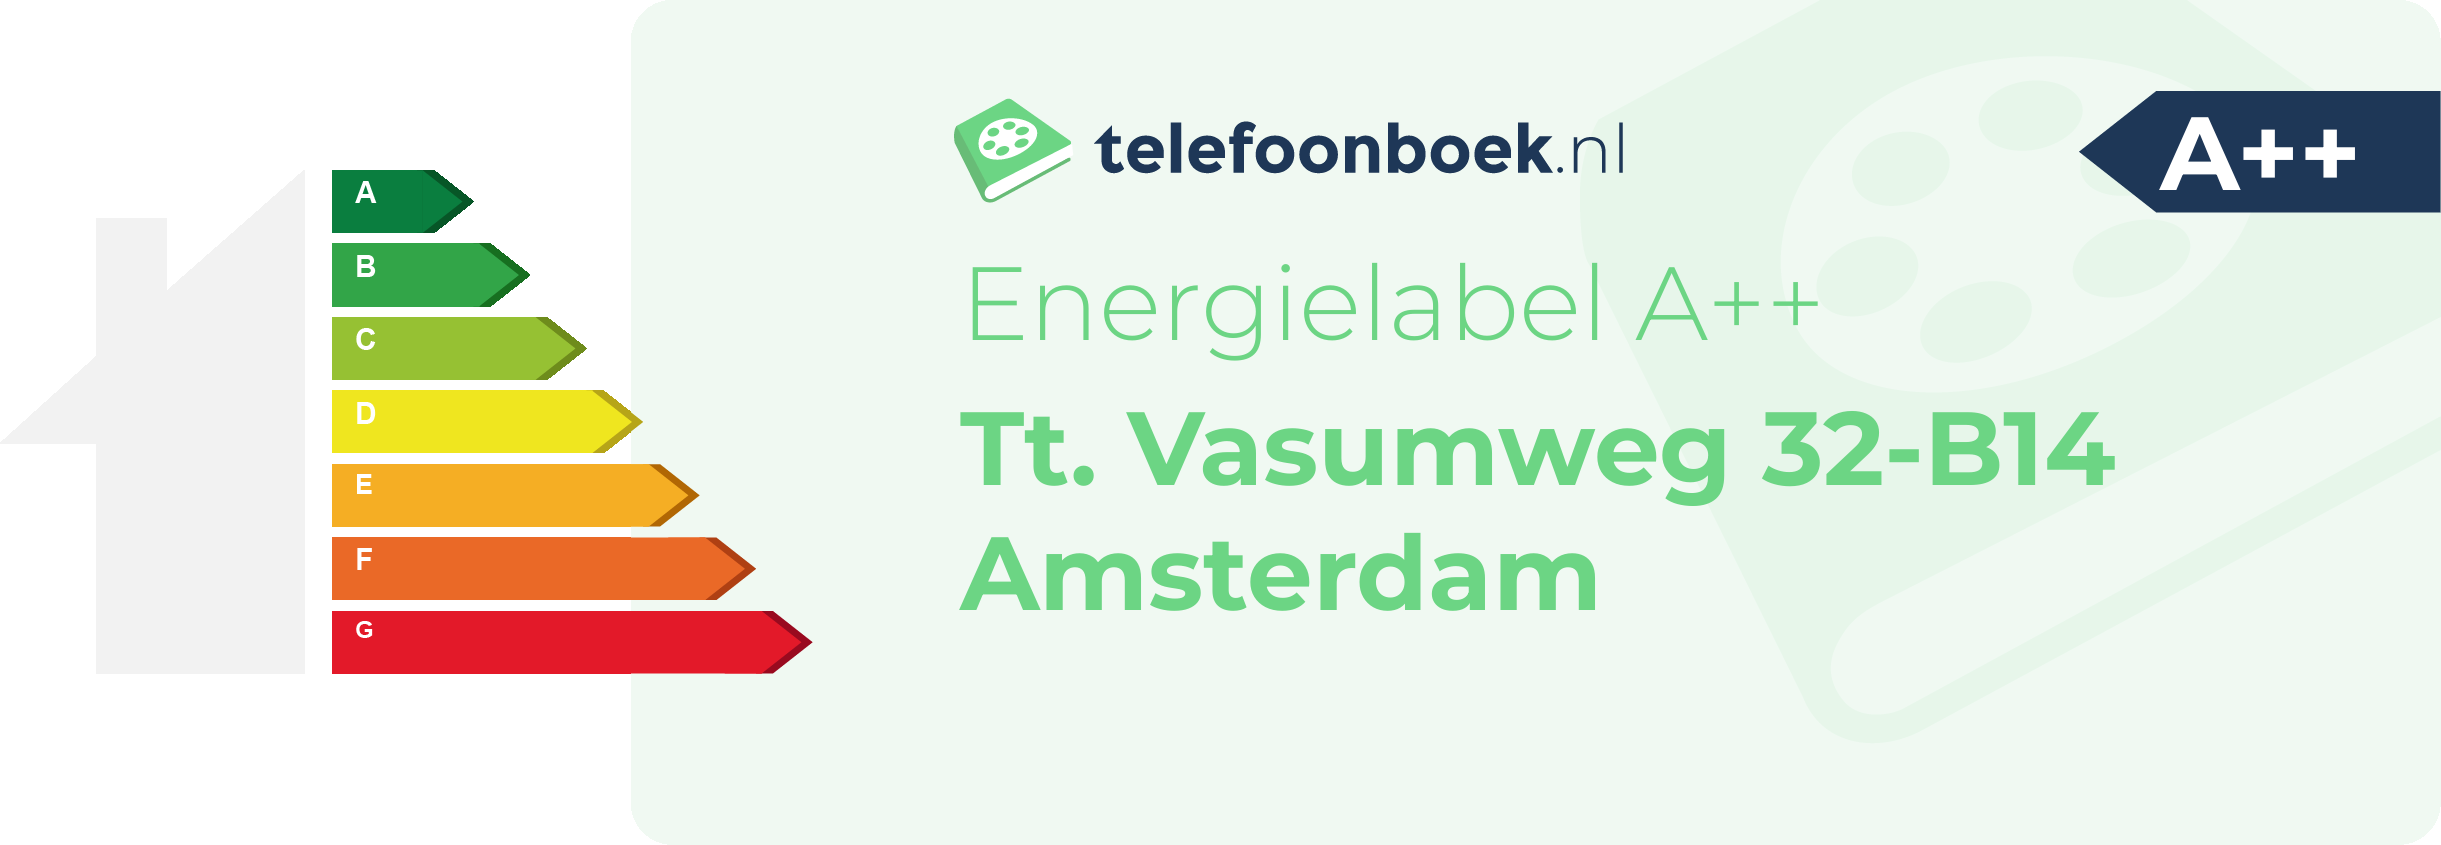 Energielabel Tt. Vasumweg 32-B14 Amsterdam